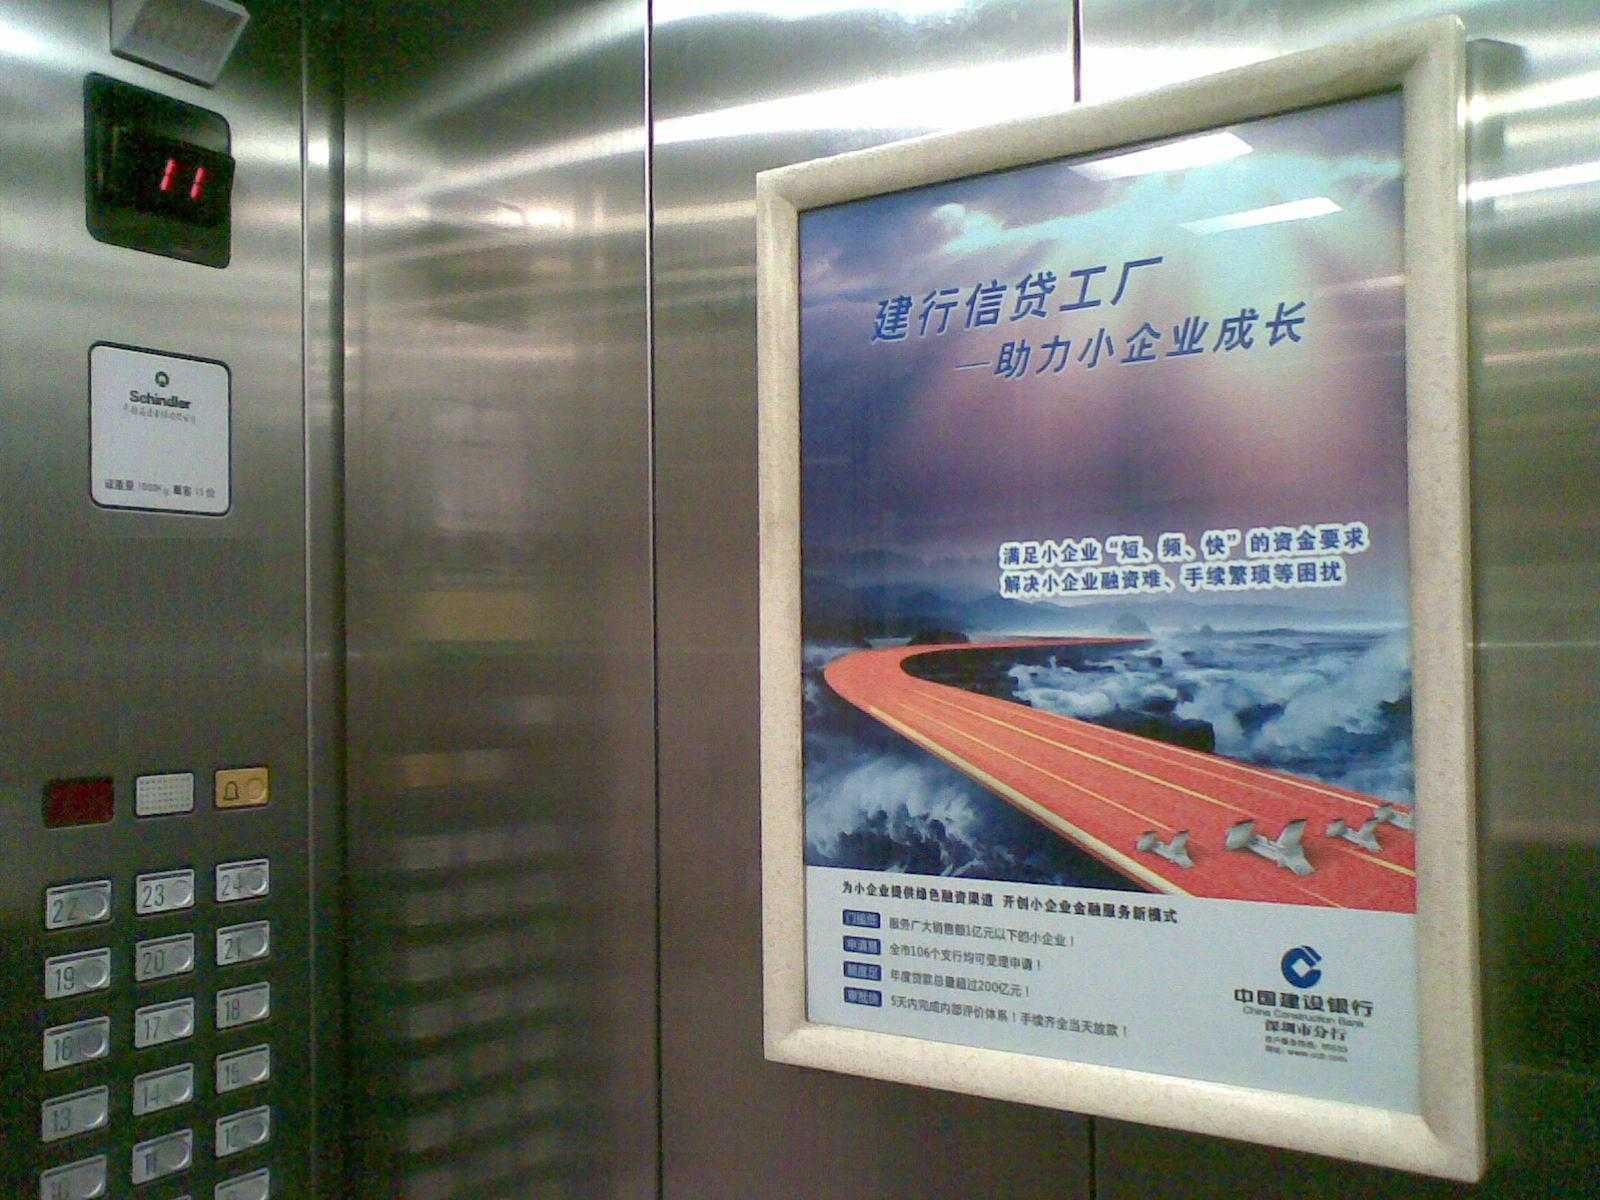 广州万科楼盘电梯广告、门按框架广告发布